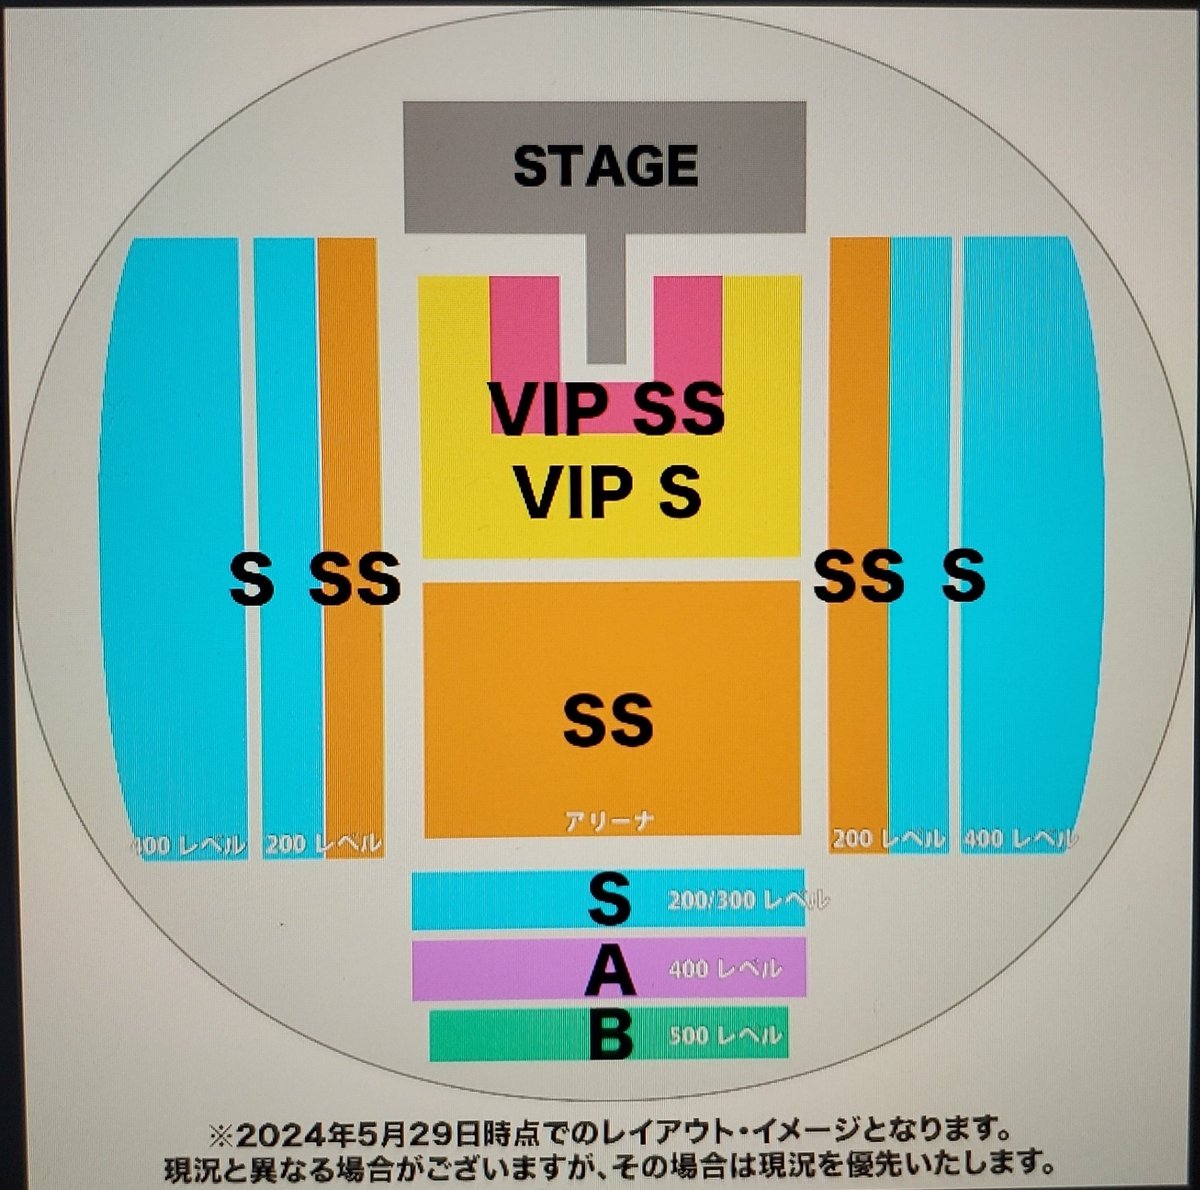 Meu Deus!
¥100,000 o VIP SS pro show da Dua Lipa
¥38,000 o VIP S

To em dúvida se pego o B que é o mais baratin de todos ou o SS msm